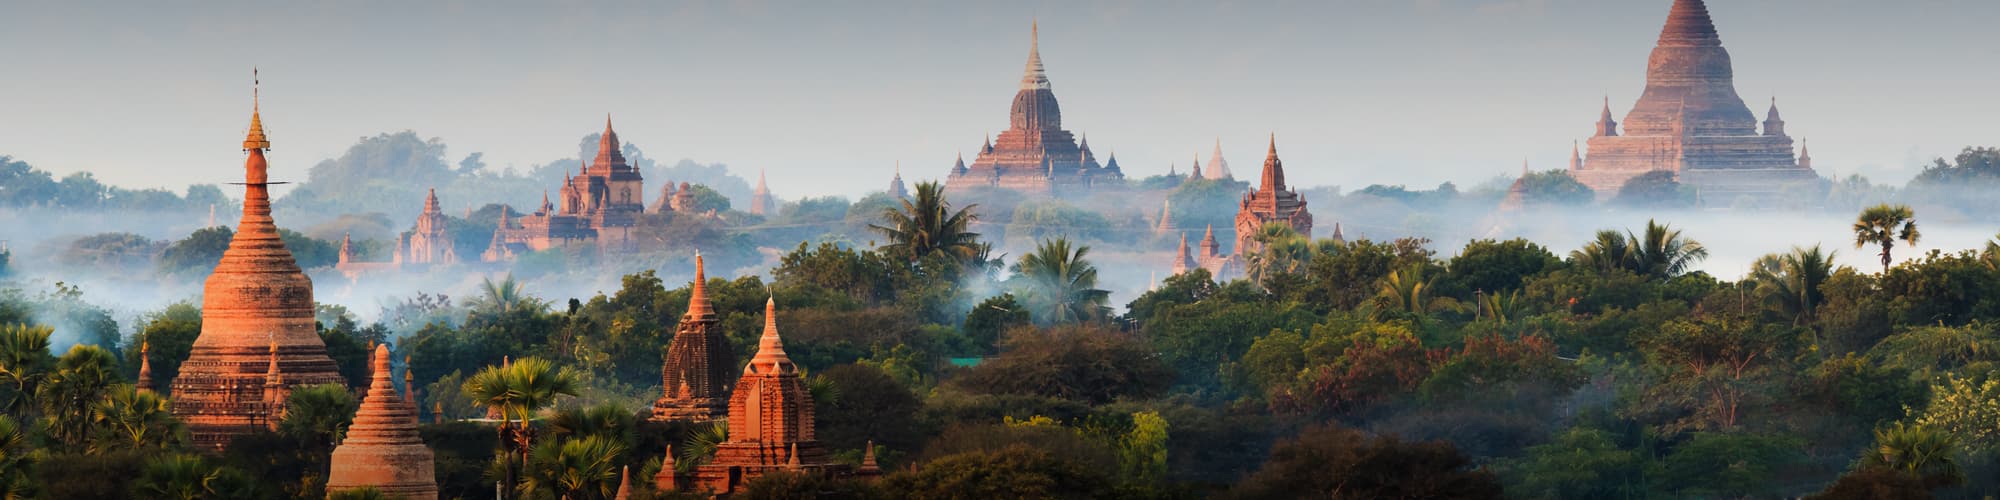 Découverte Birmanie © lkunl / Adobe Stock